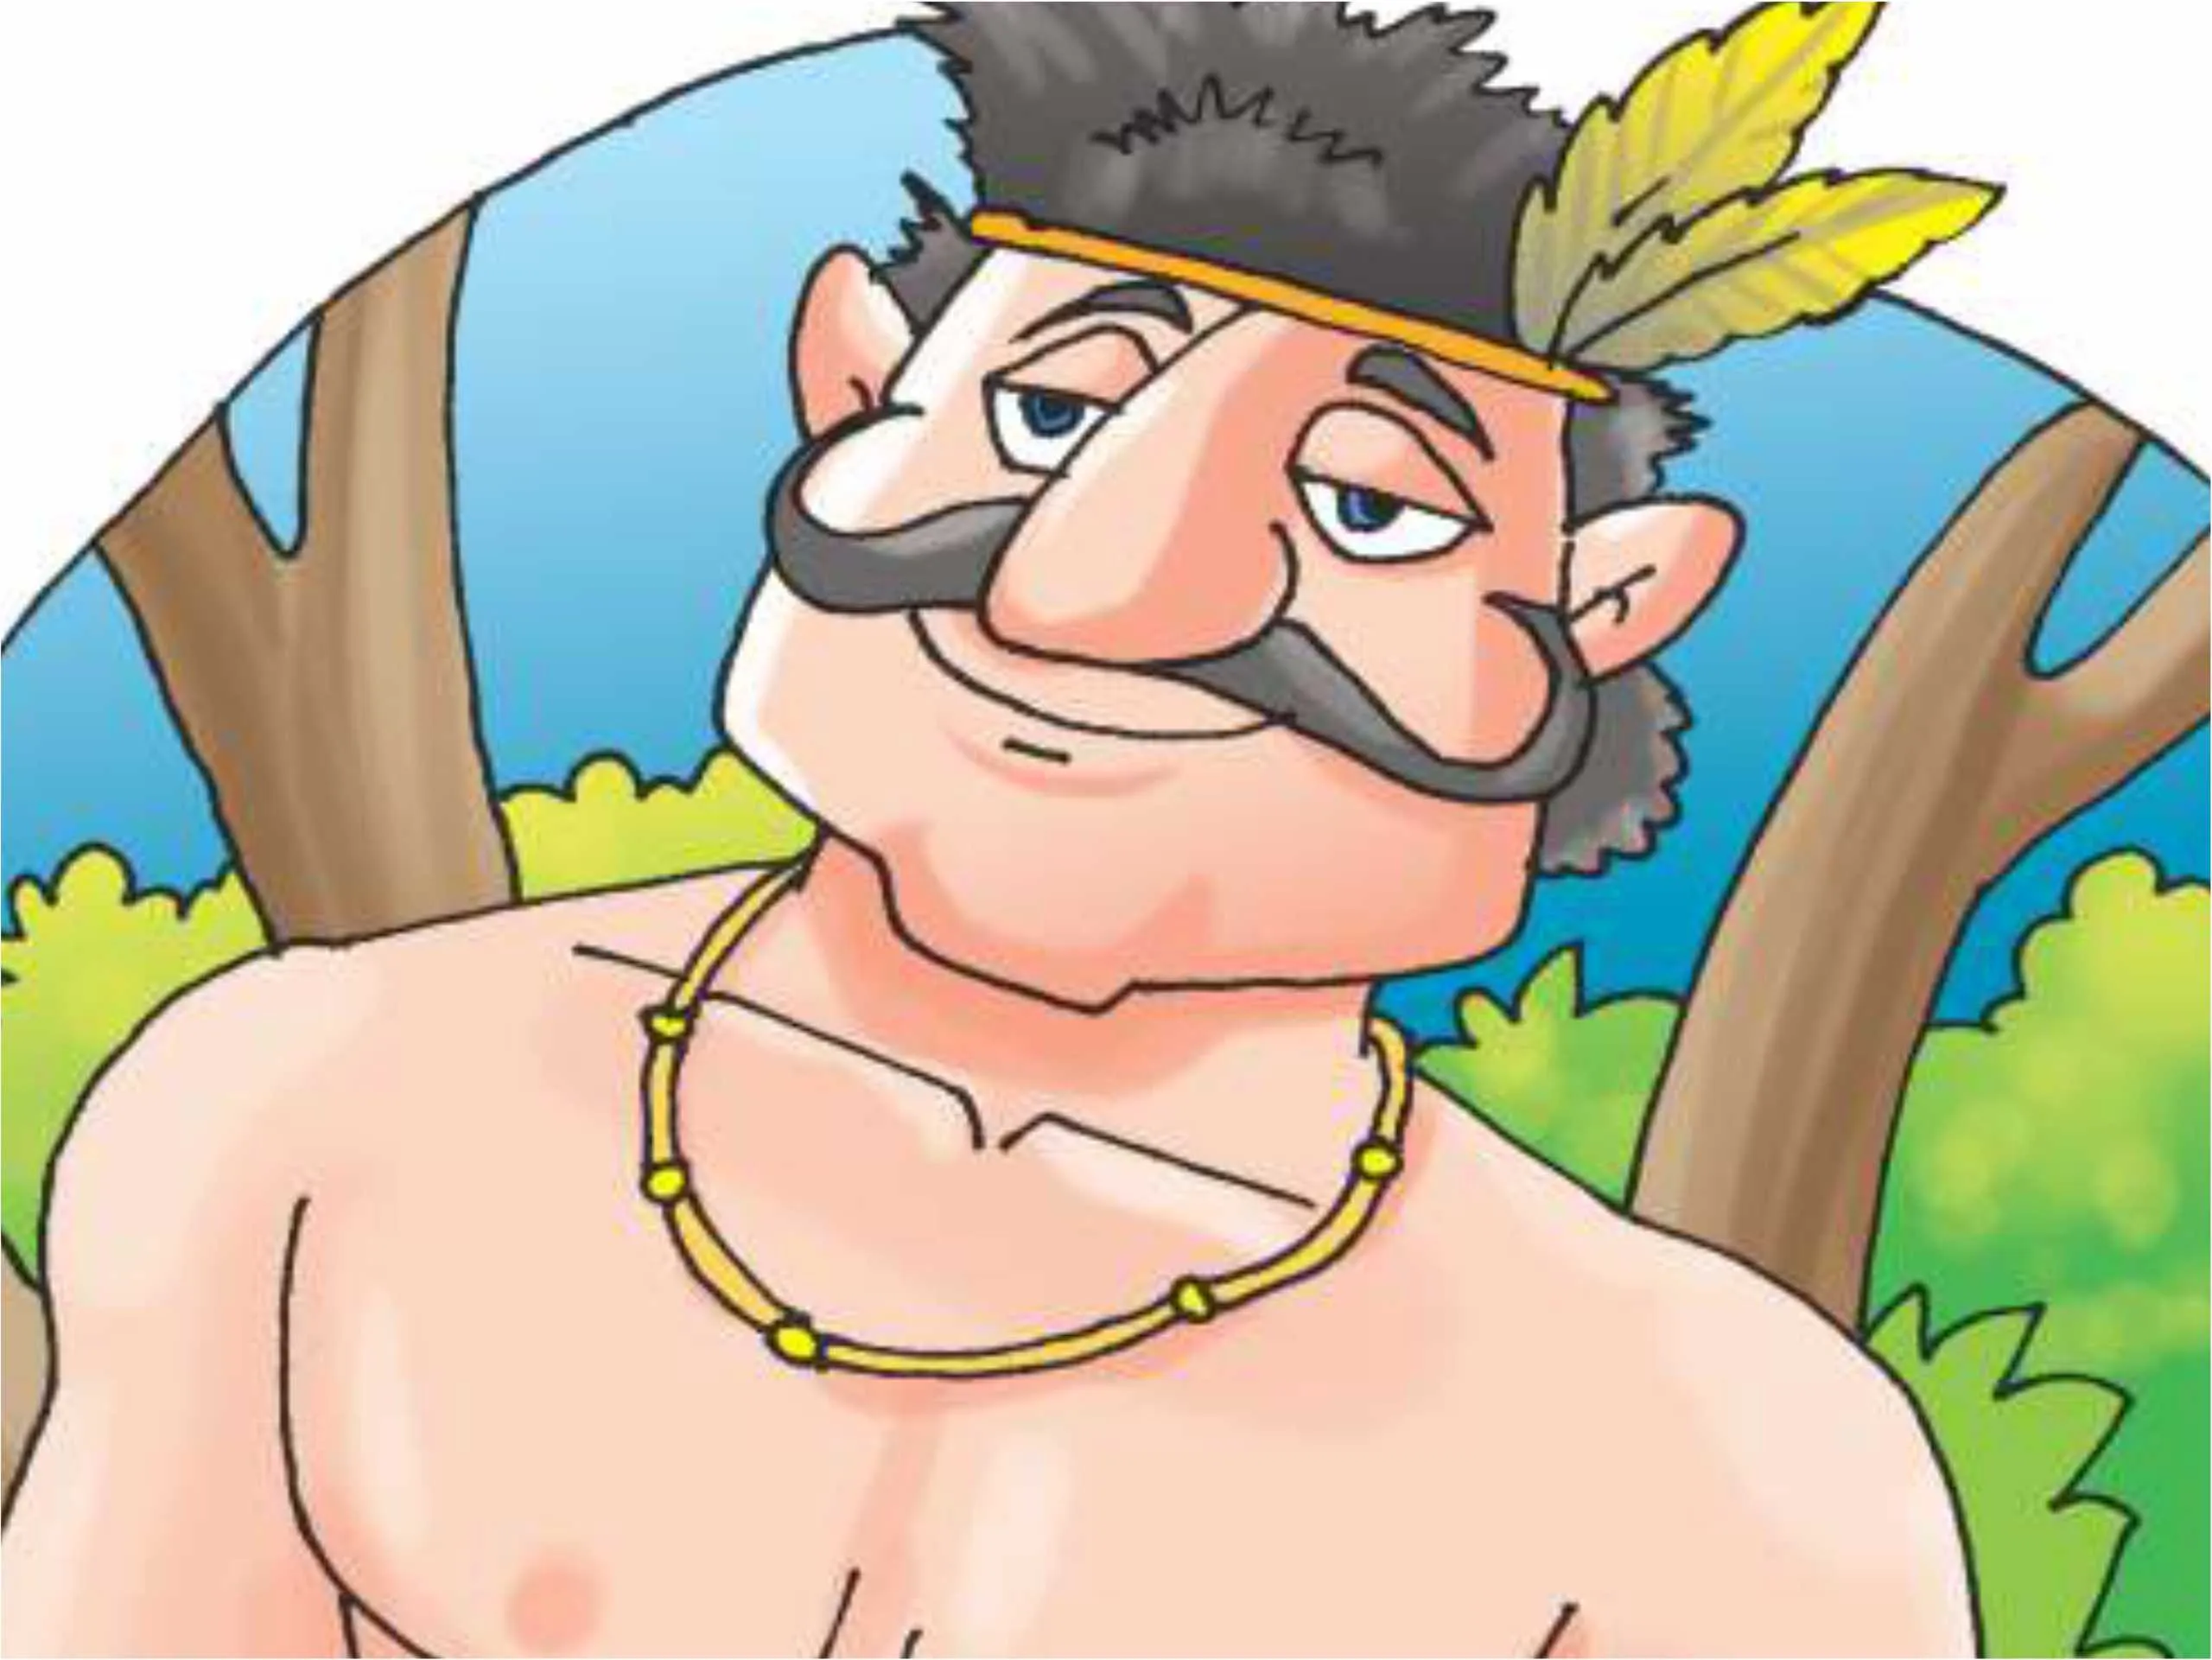 Jungali man Cartoon image